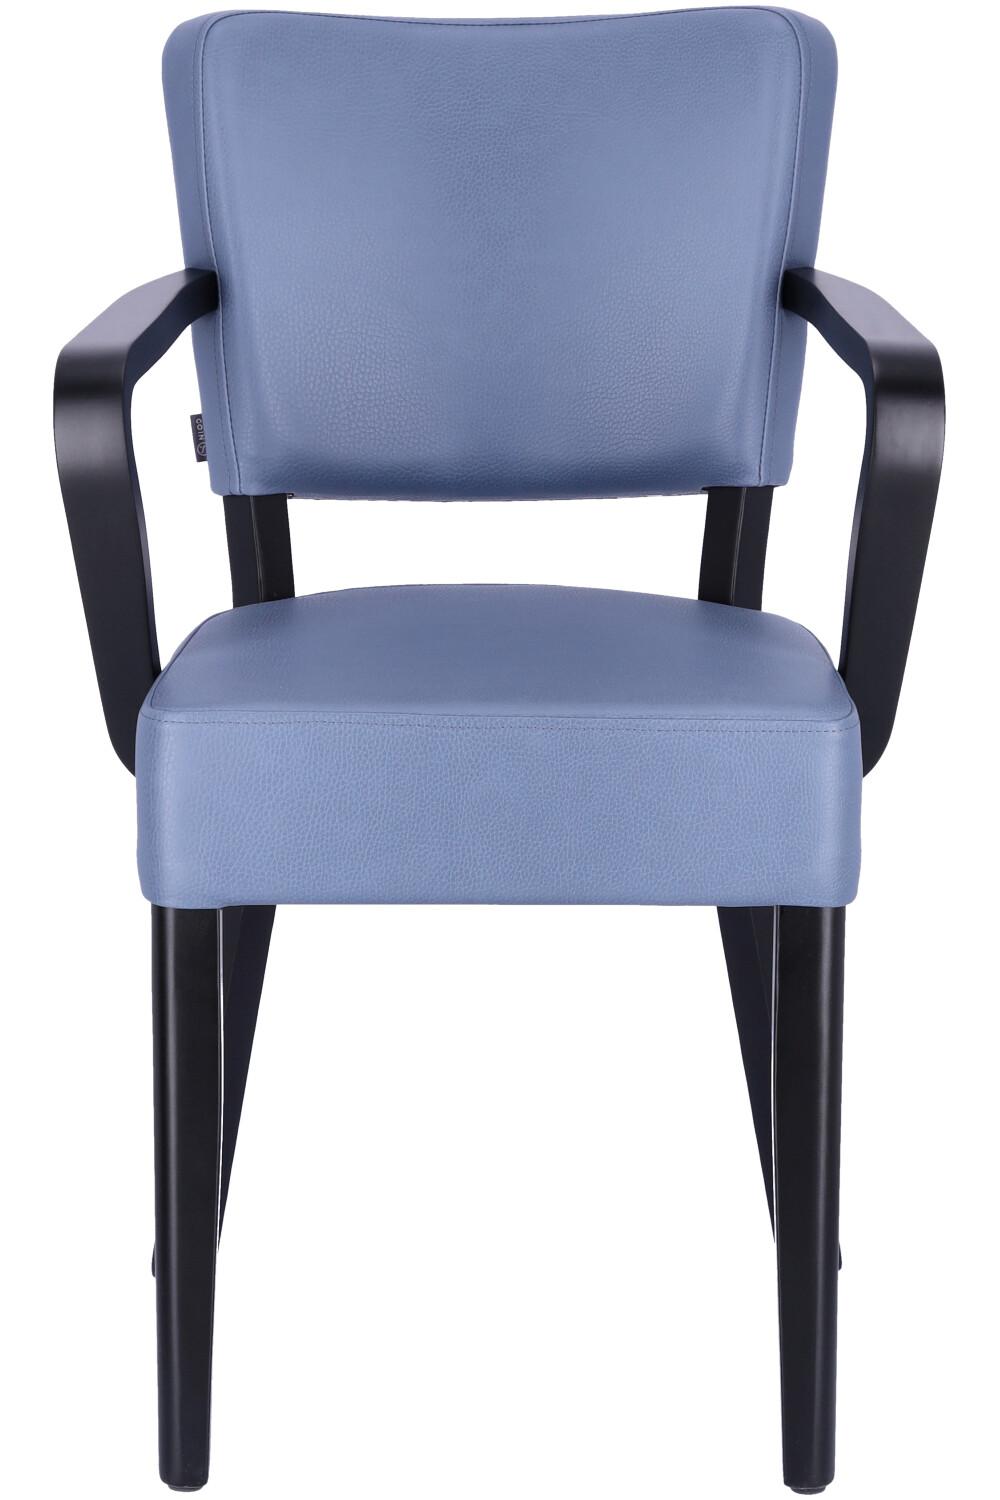 Abbildung arm chair Damara Vorderansicht